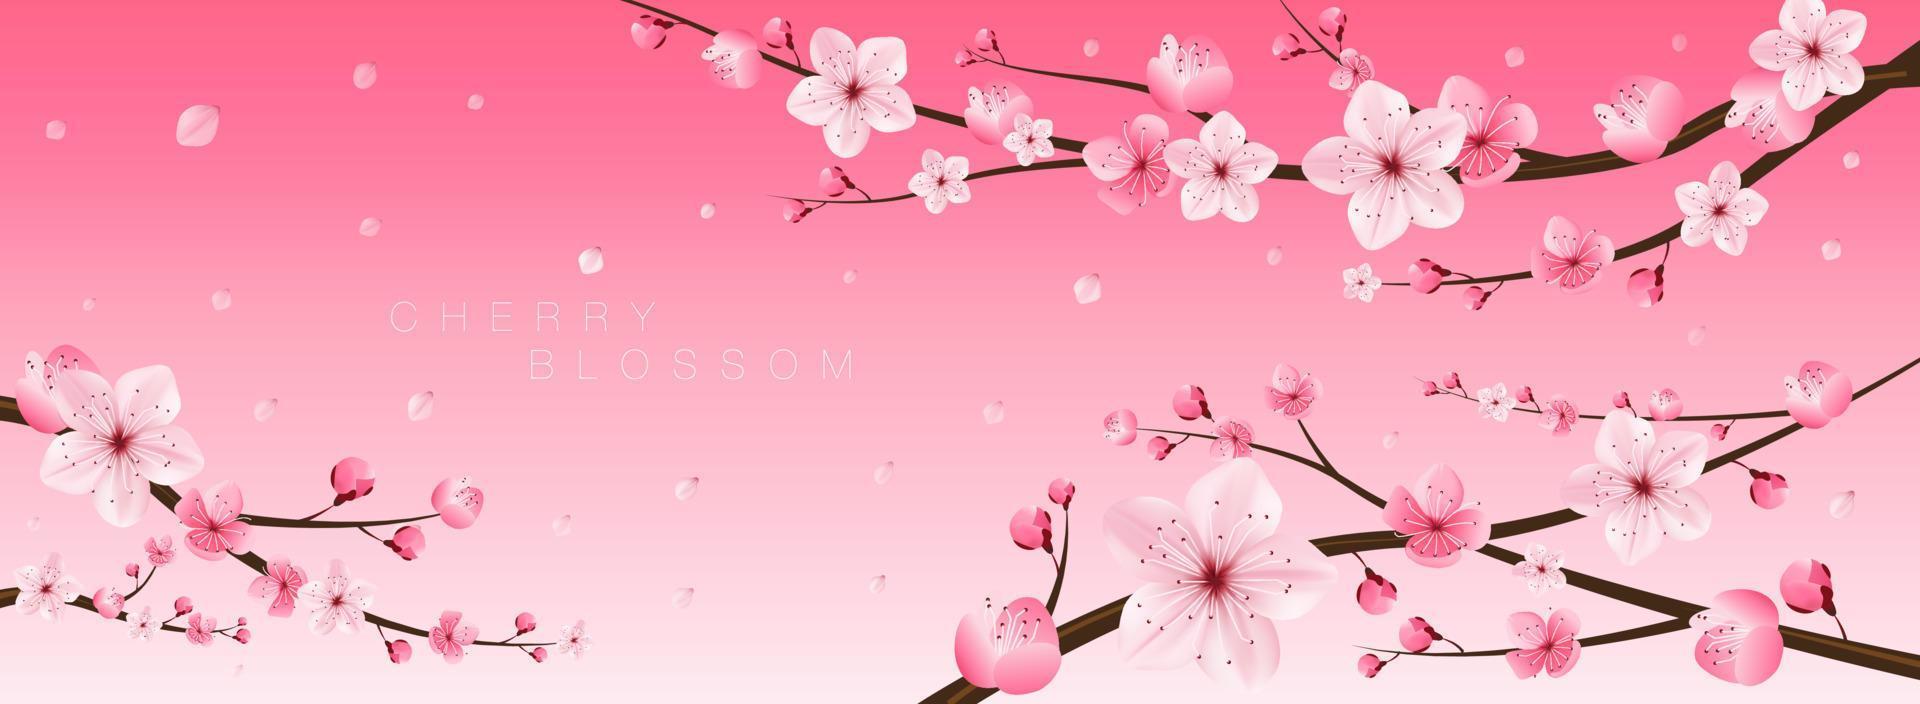 kersenbloesem, sakura, japan, japans bloemmotief, vectorillustratie. vector